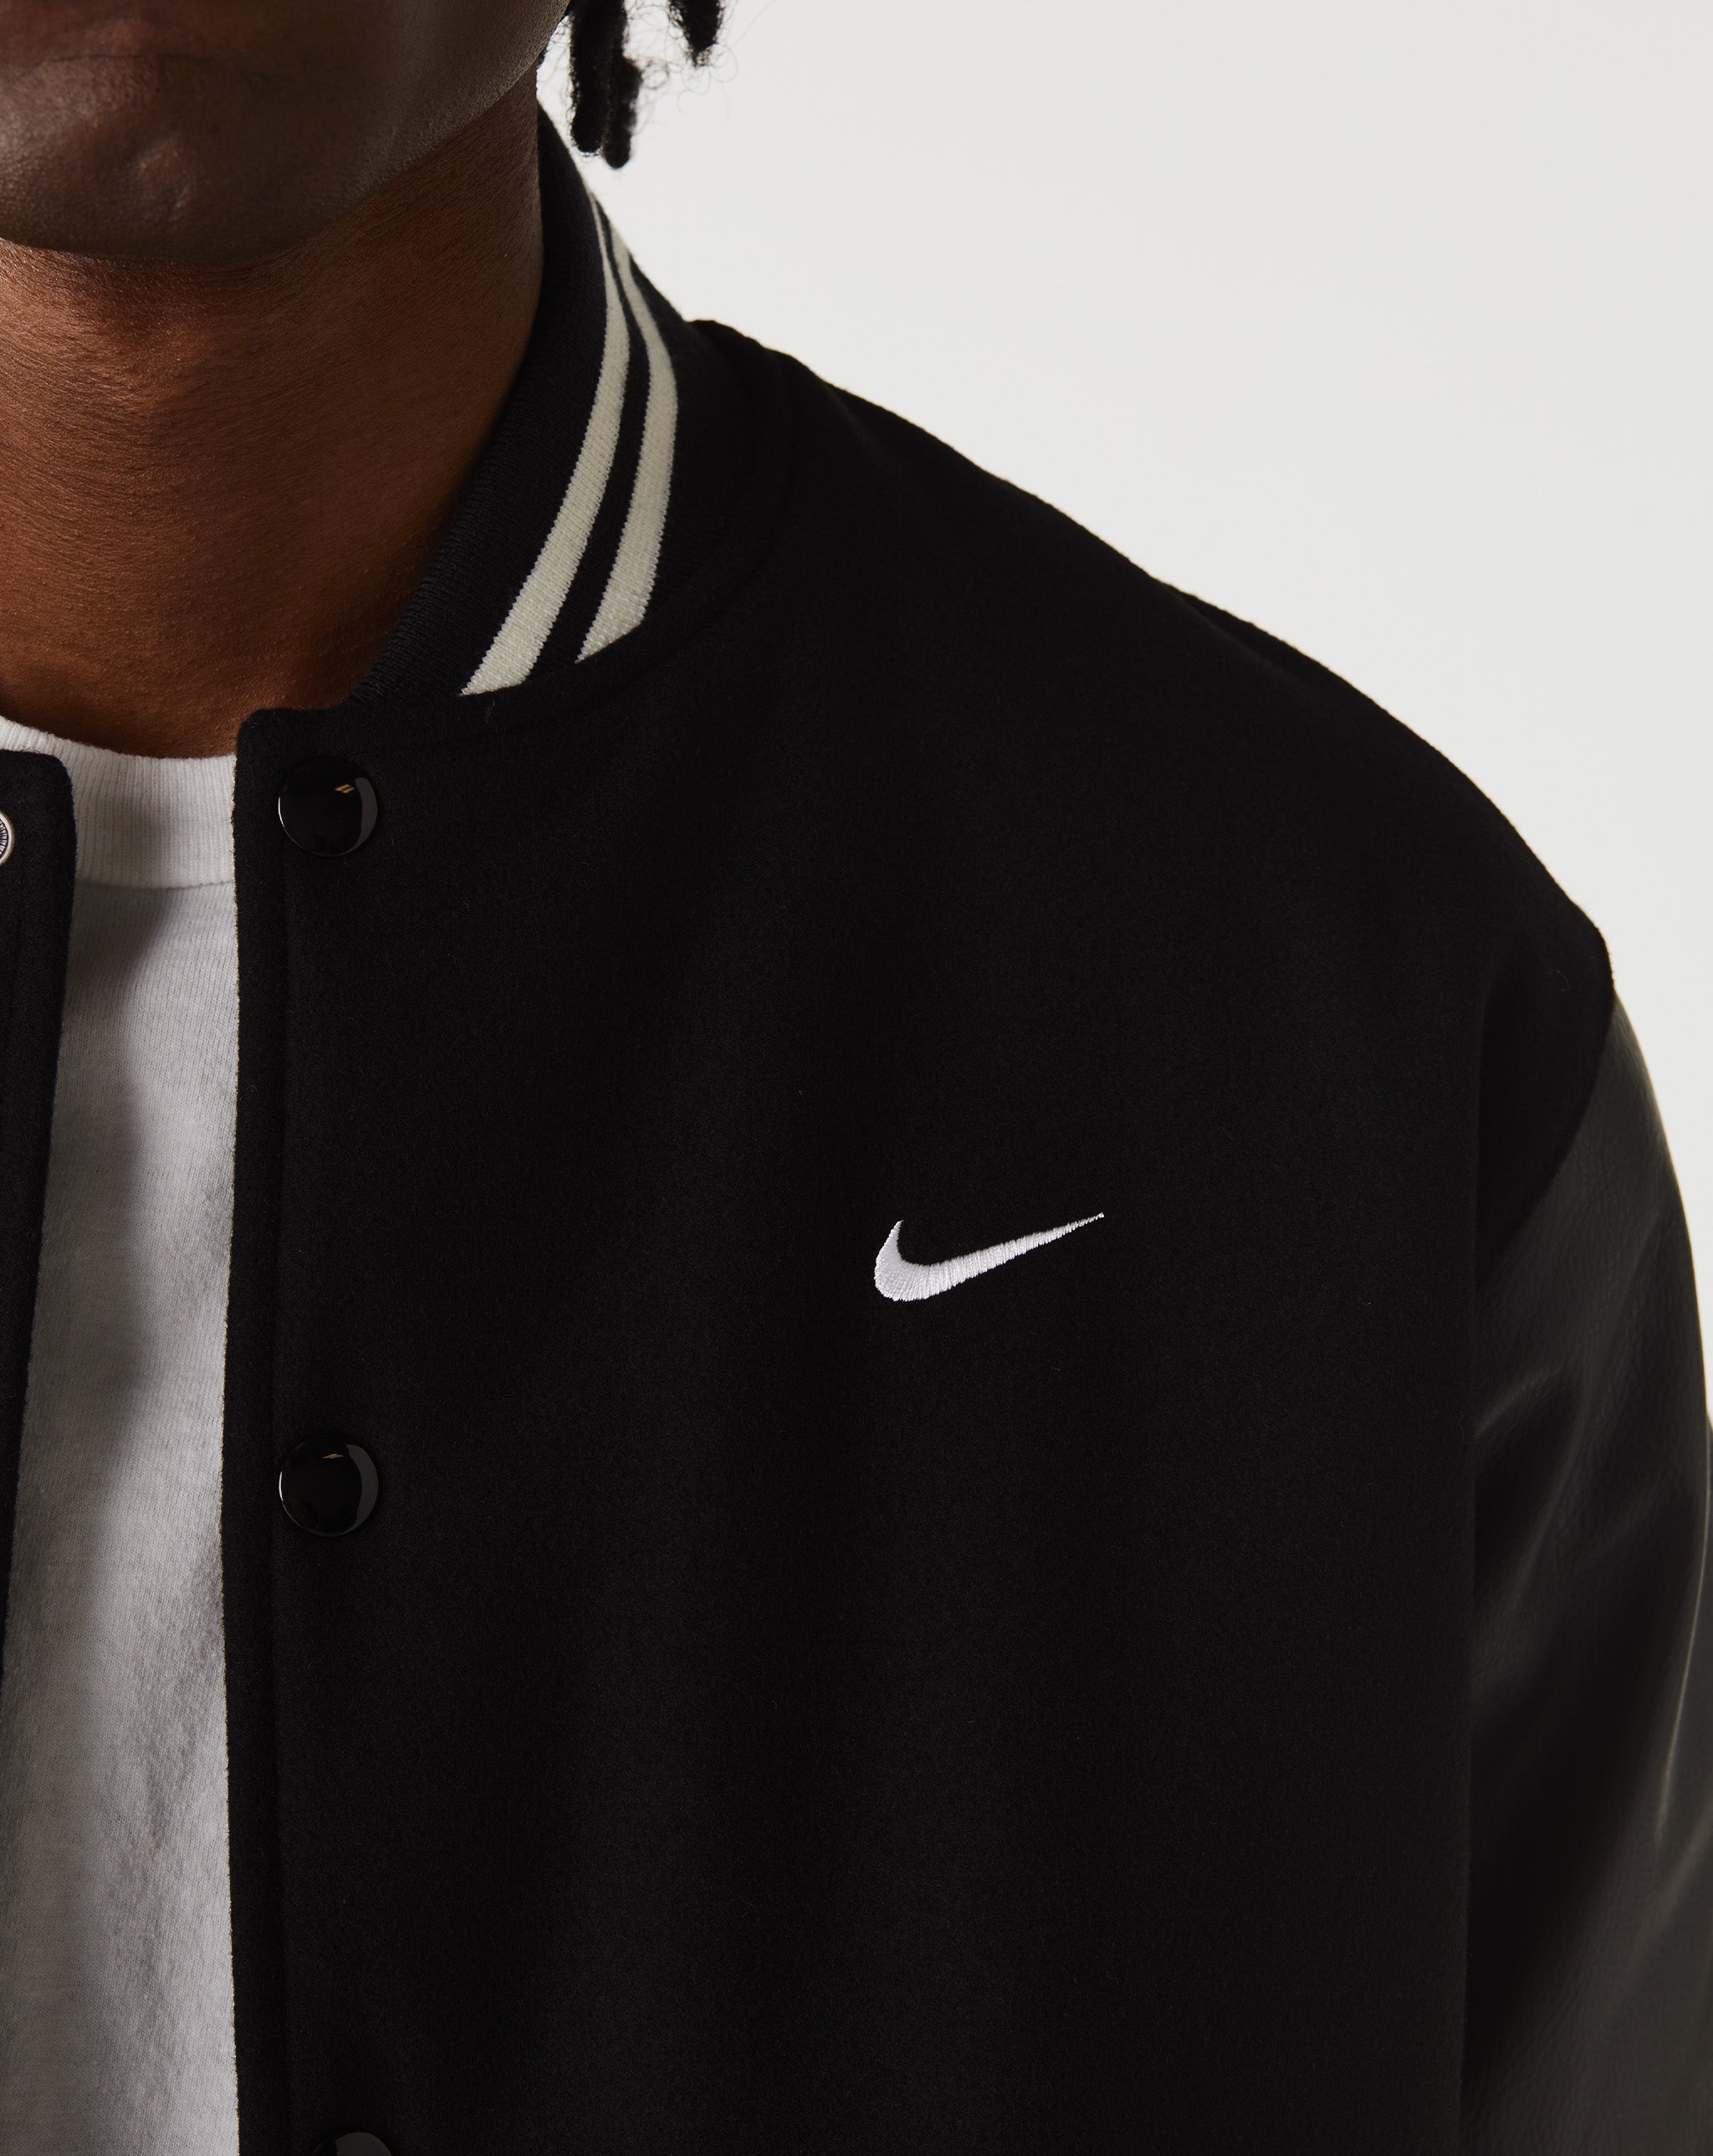 Nike Nike Authentics Varsity Jacket  - XHIBITION